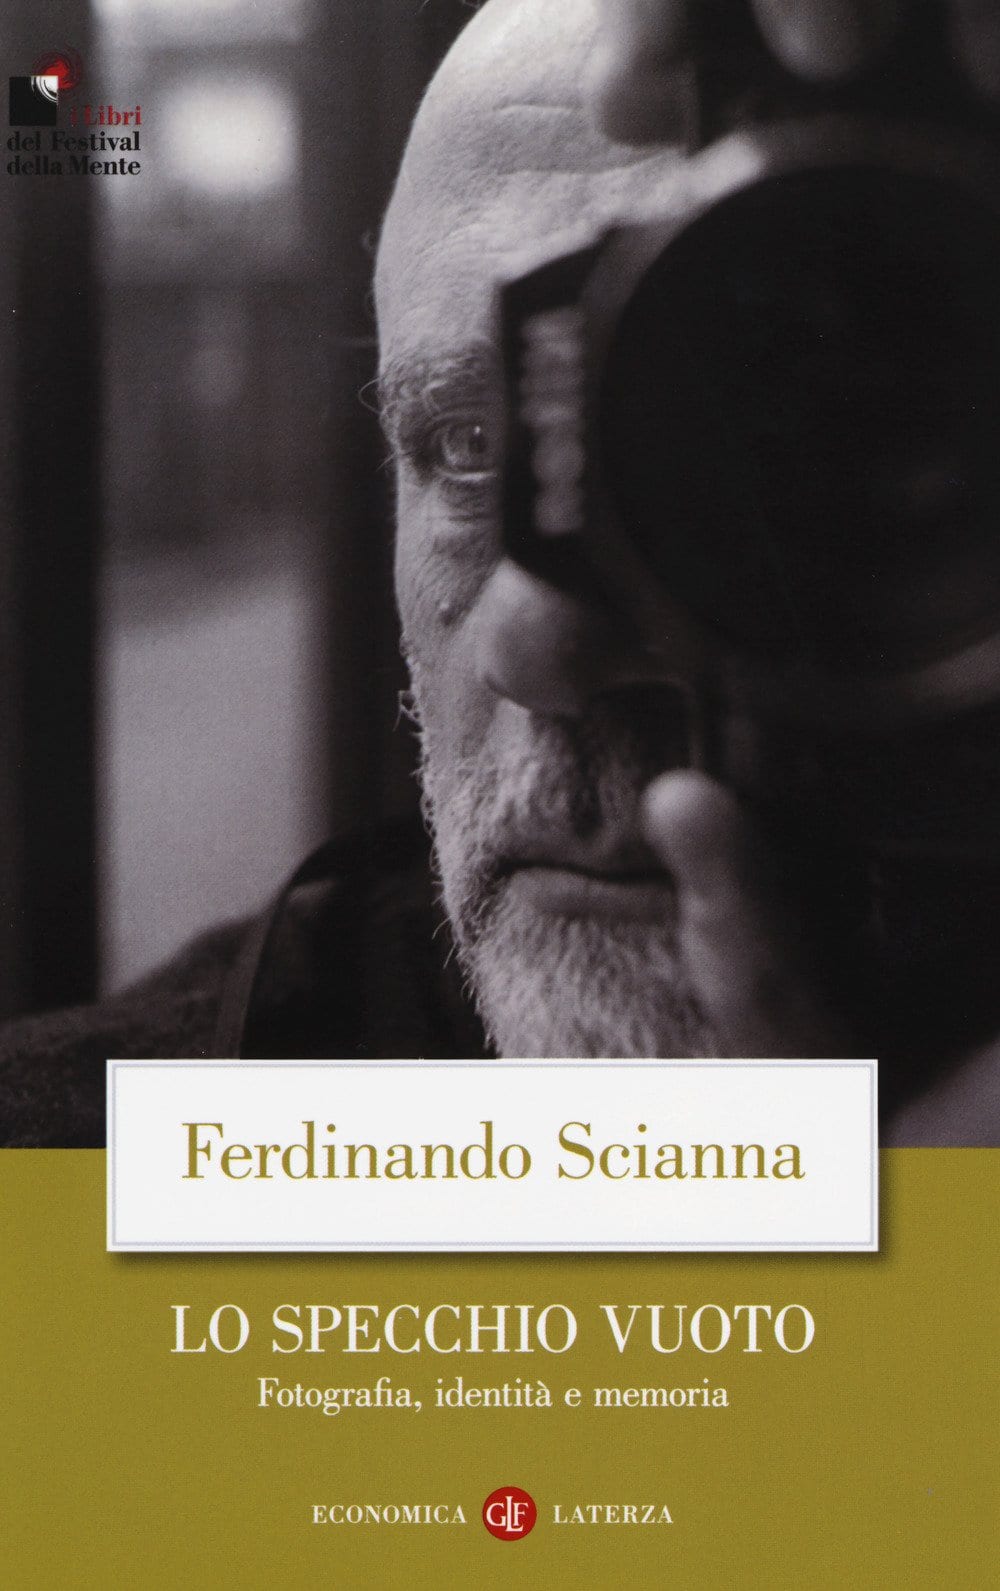 Ferdinando Scianna Lo specchio vuoto